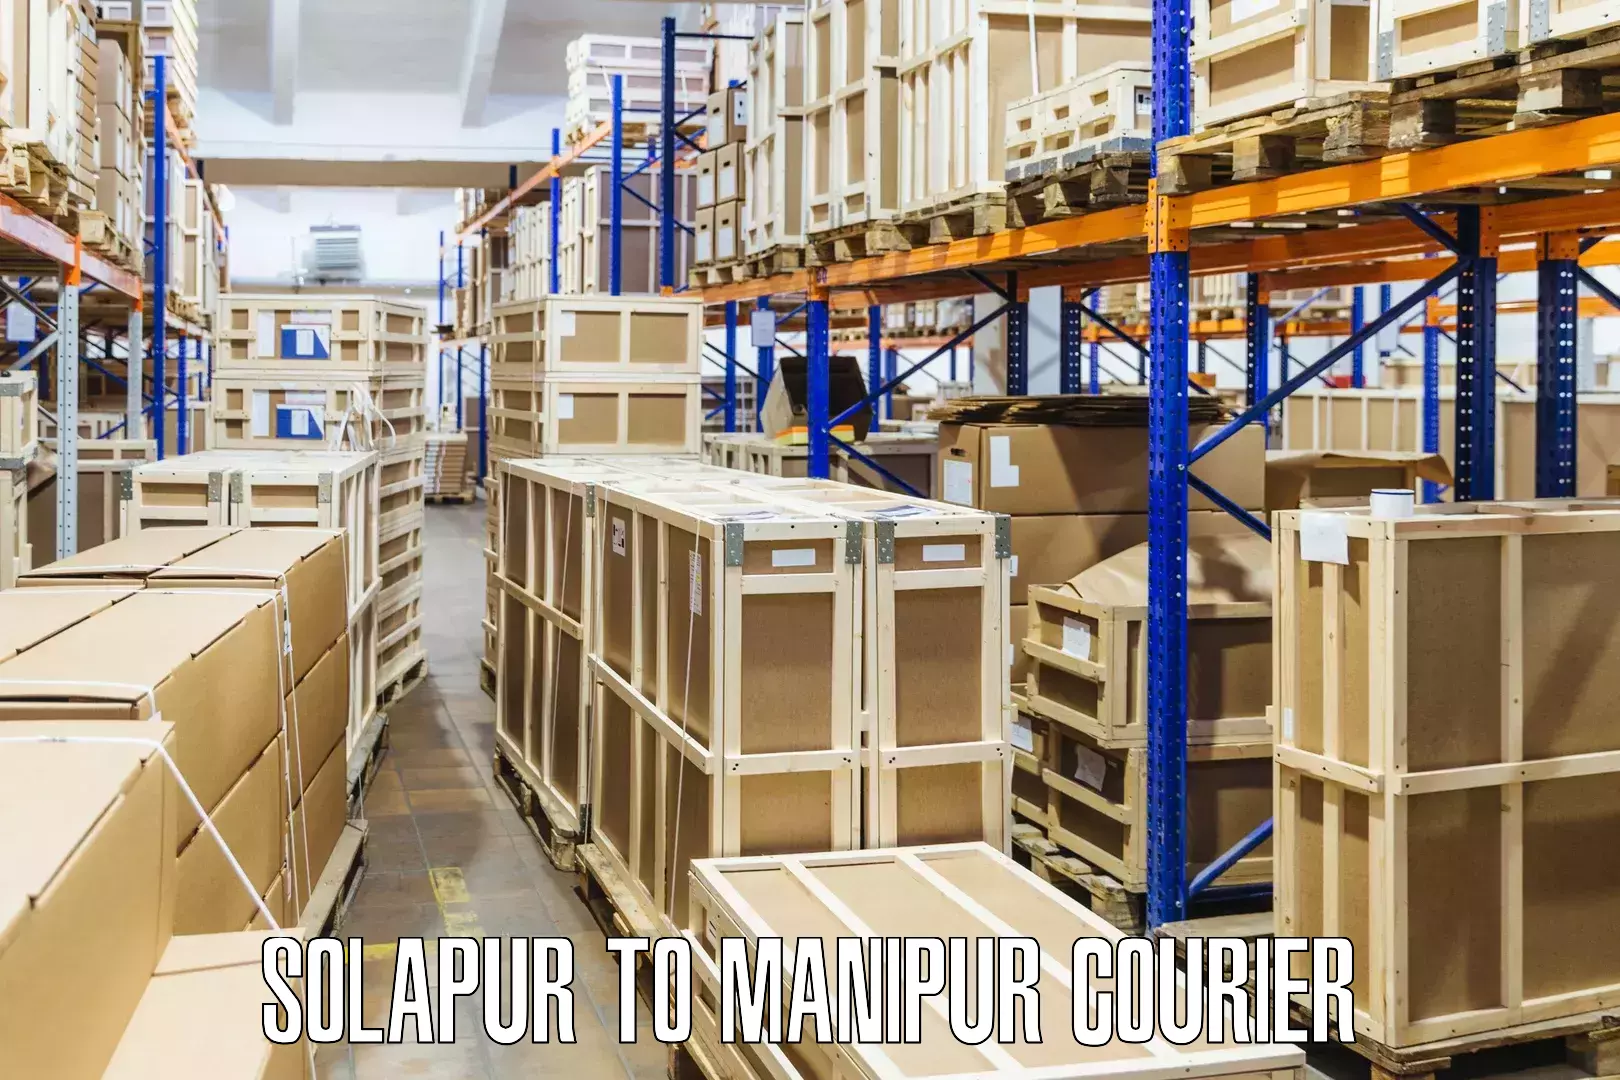 Next-day freight services Solapur to Tadubi